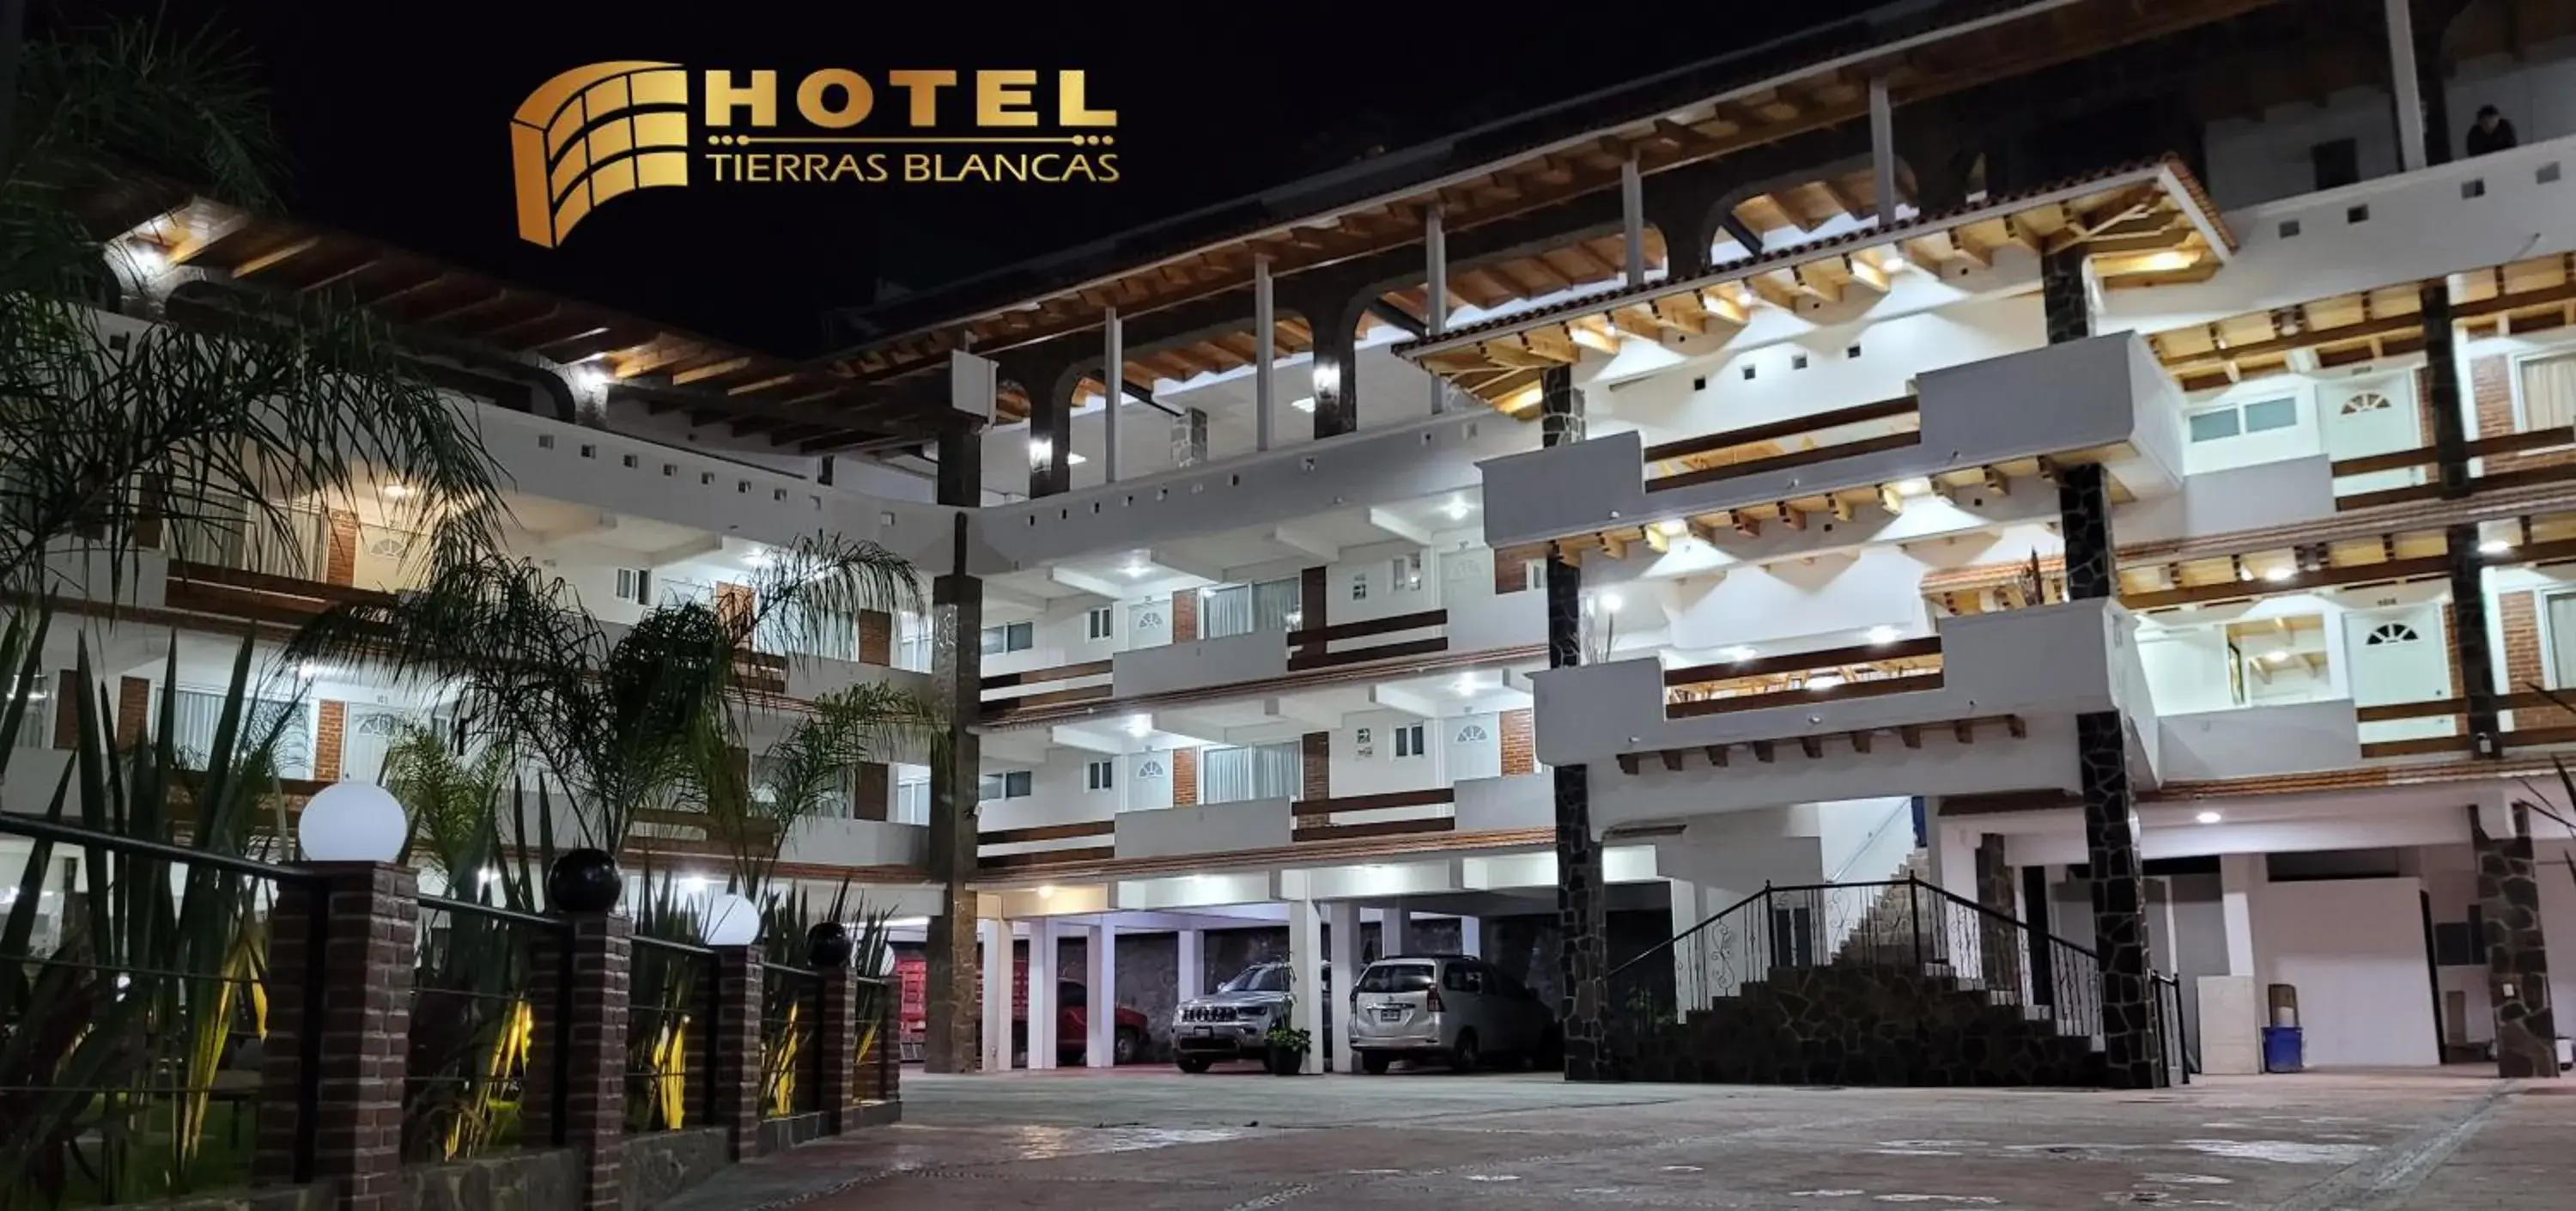 Property Building in Hotel Tierras Blancas